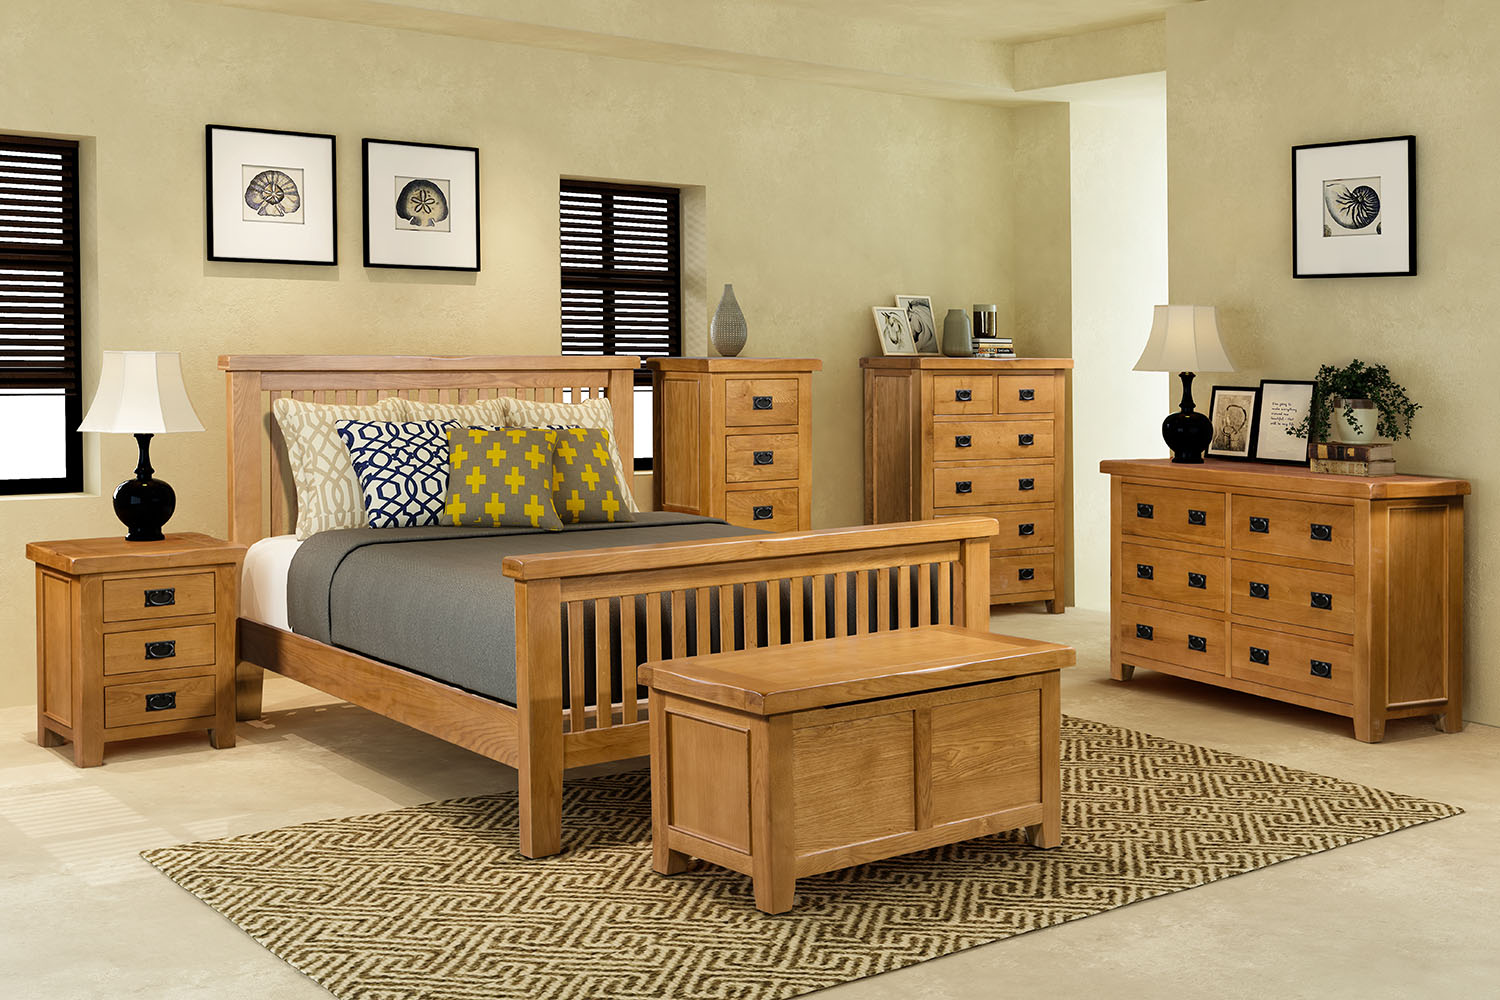 oak bedroom furniture ireland